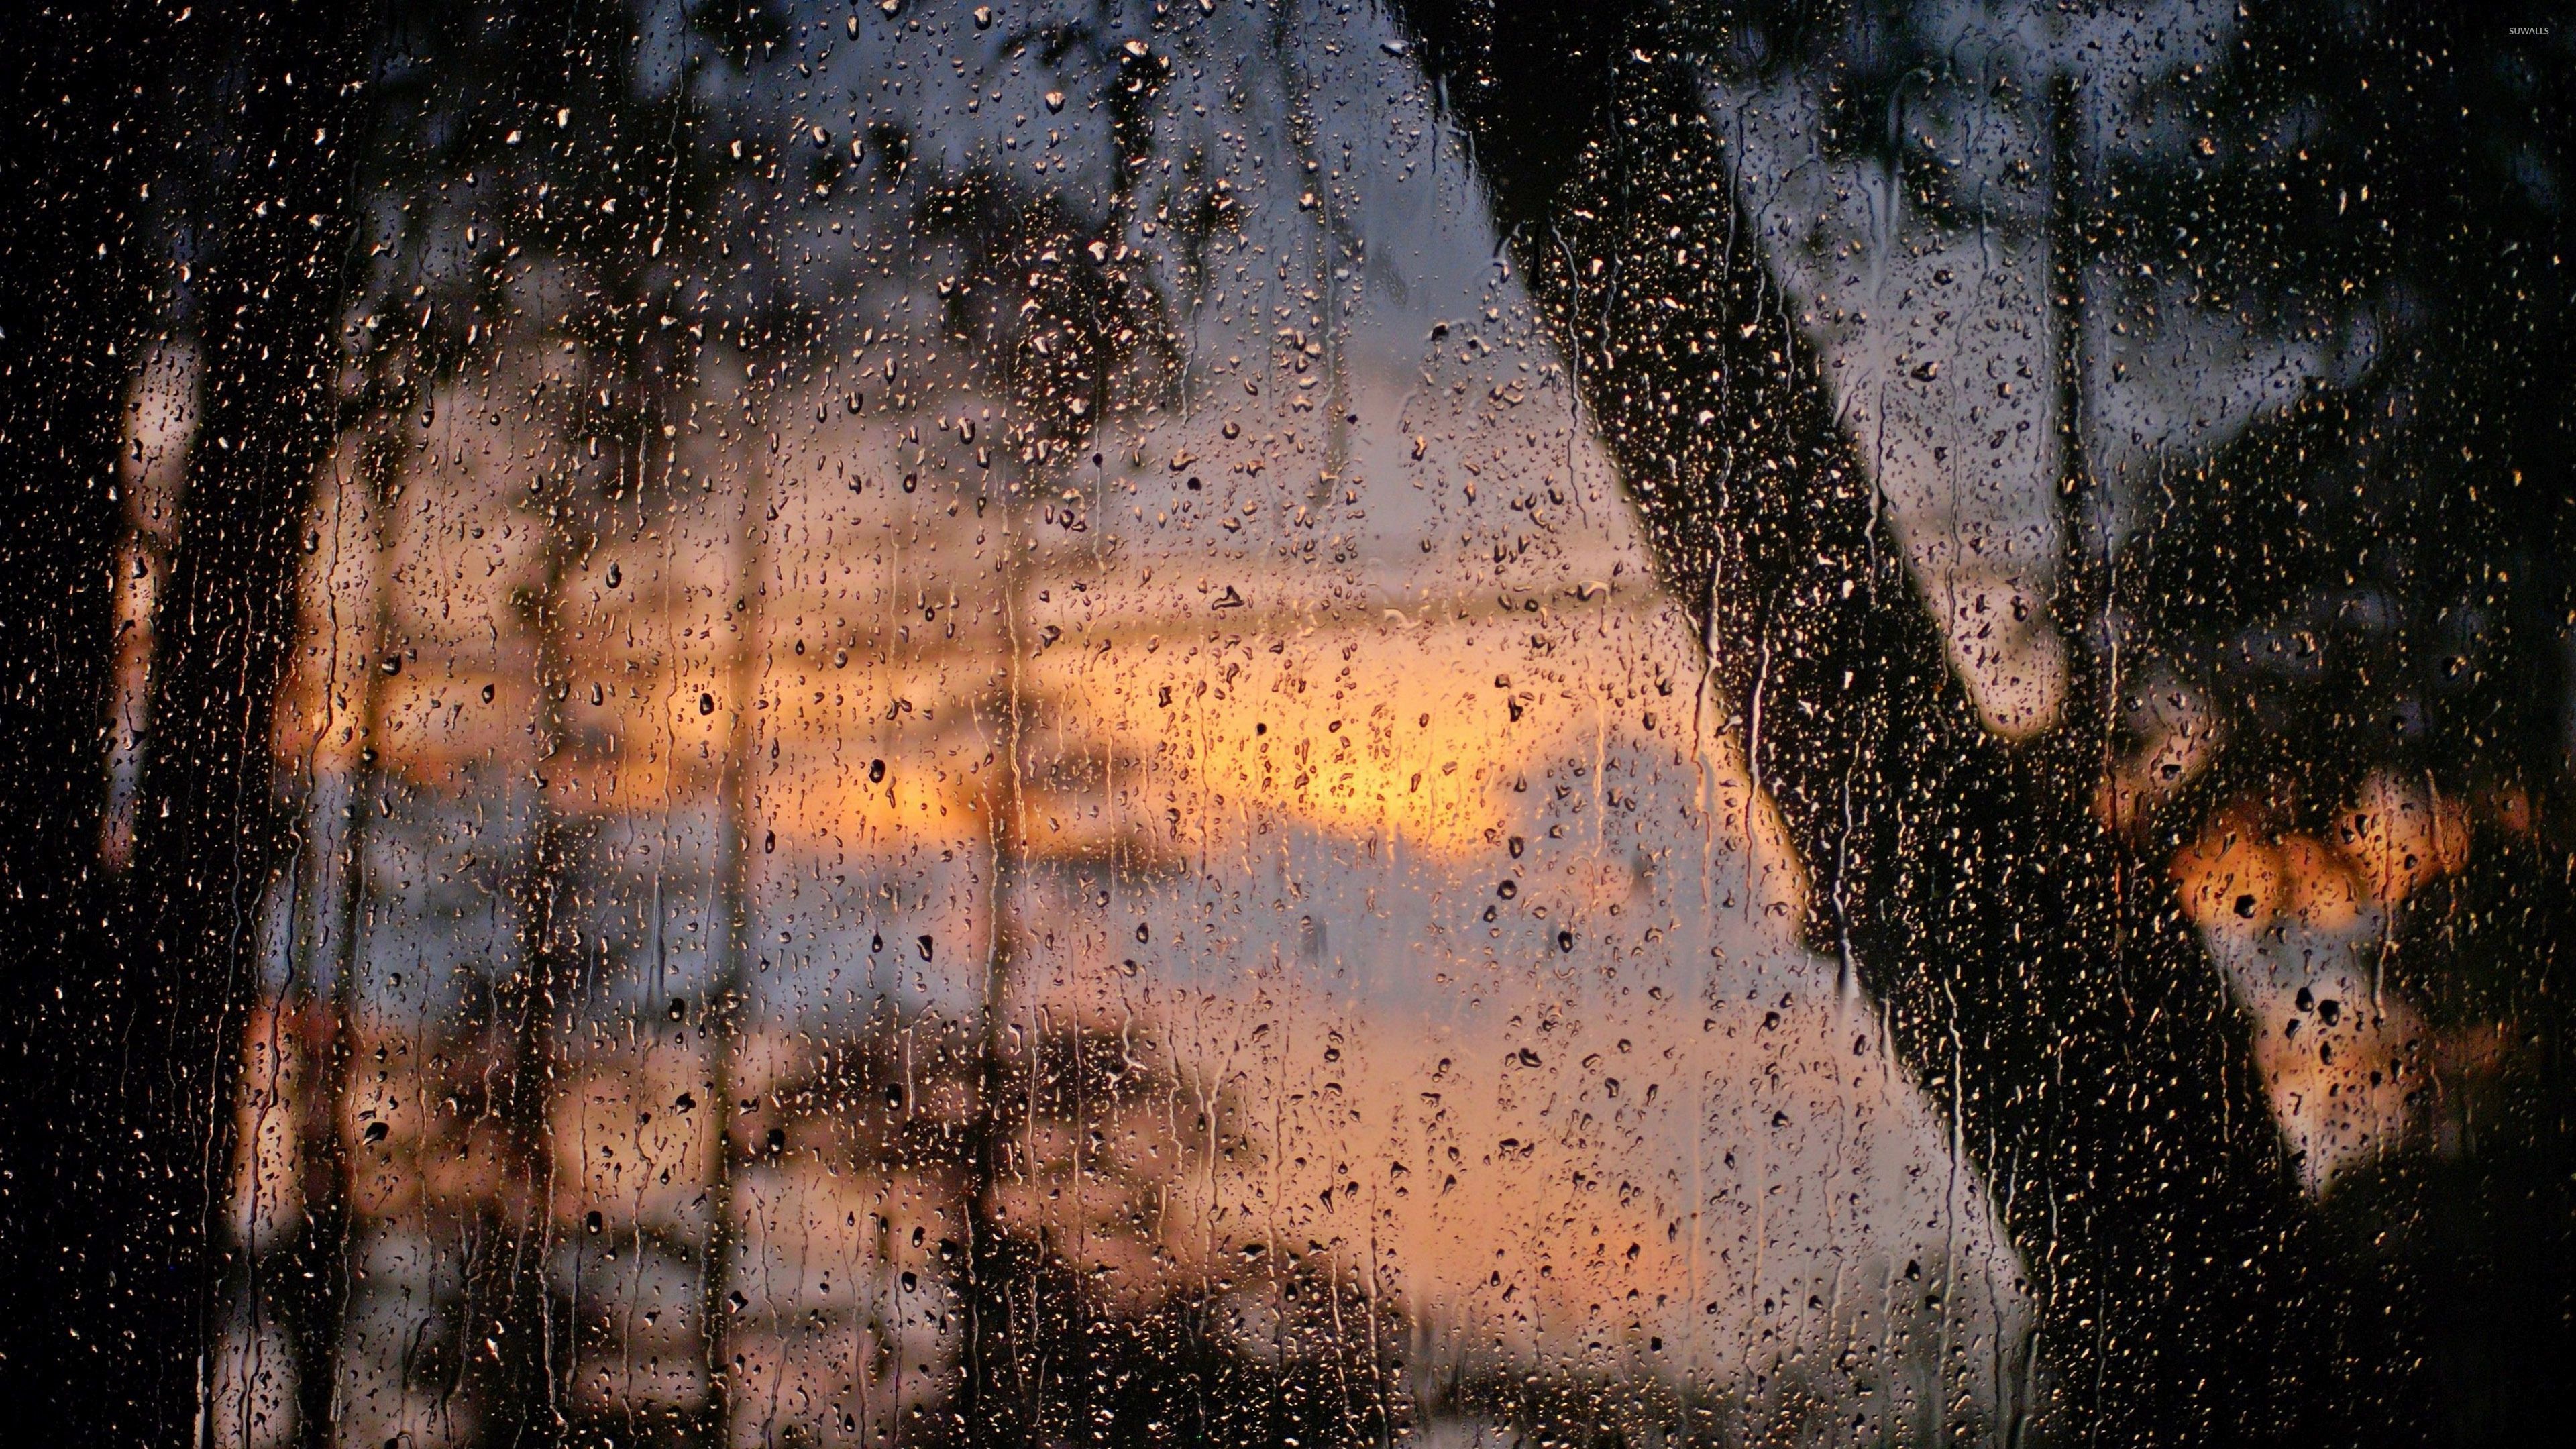 Với nền tảng mưa mang tính nghệ thuật, những giọt nước lặng lẽ rơi từ trên cao như tạo ra một thế giới không gian đầy phù phiếm. Hãy cùng chiêm ngưỡng hình ảnh đầy chất thơ của nền tảng mưa mang tính nghệ thuật.